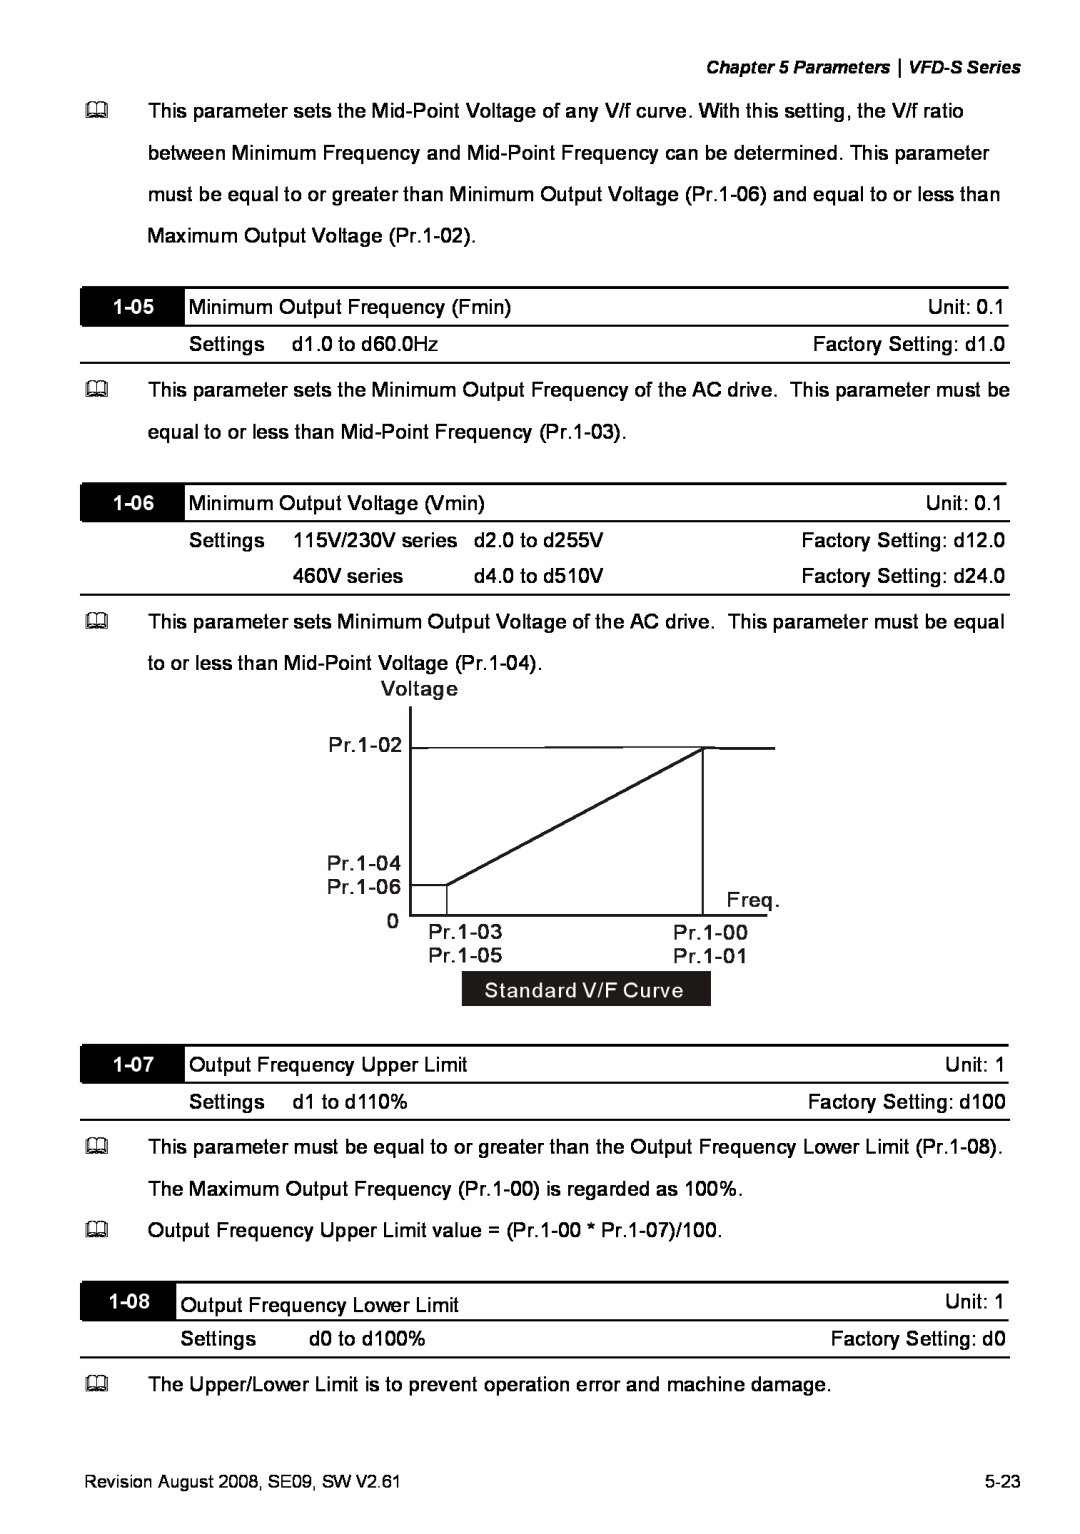 Delta Electronics VFD-S manual 1-05, 1-06, Standard V/F Curve, 1-07, 1-08 